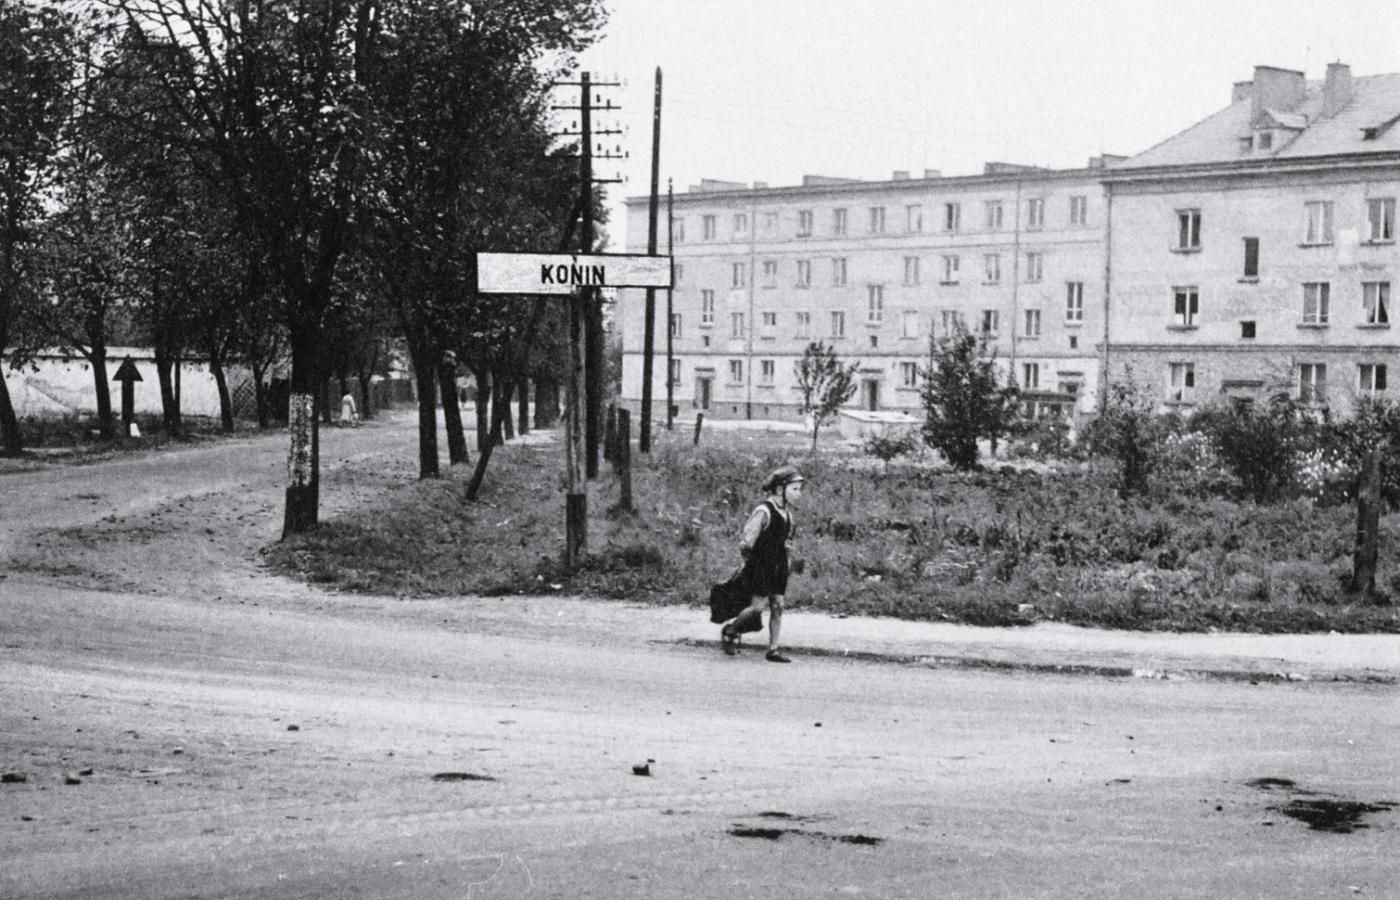 W latach 50. dopiero powstawał Nowy Konin. Na zdjęciu bloki przy ul. Górniczej.